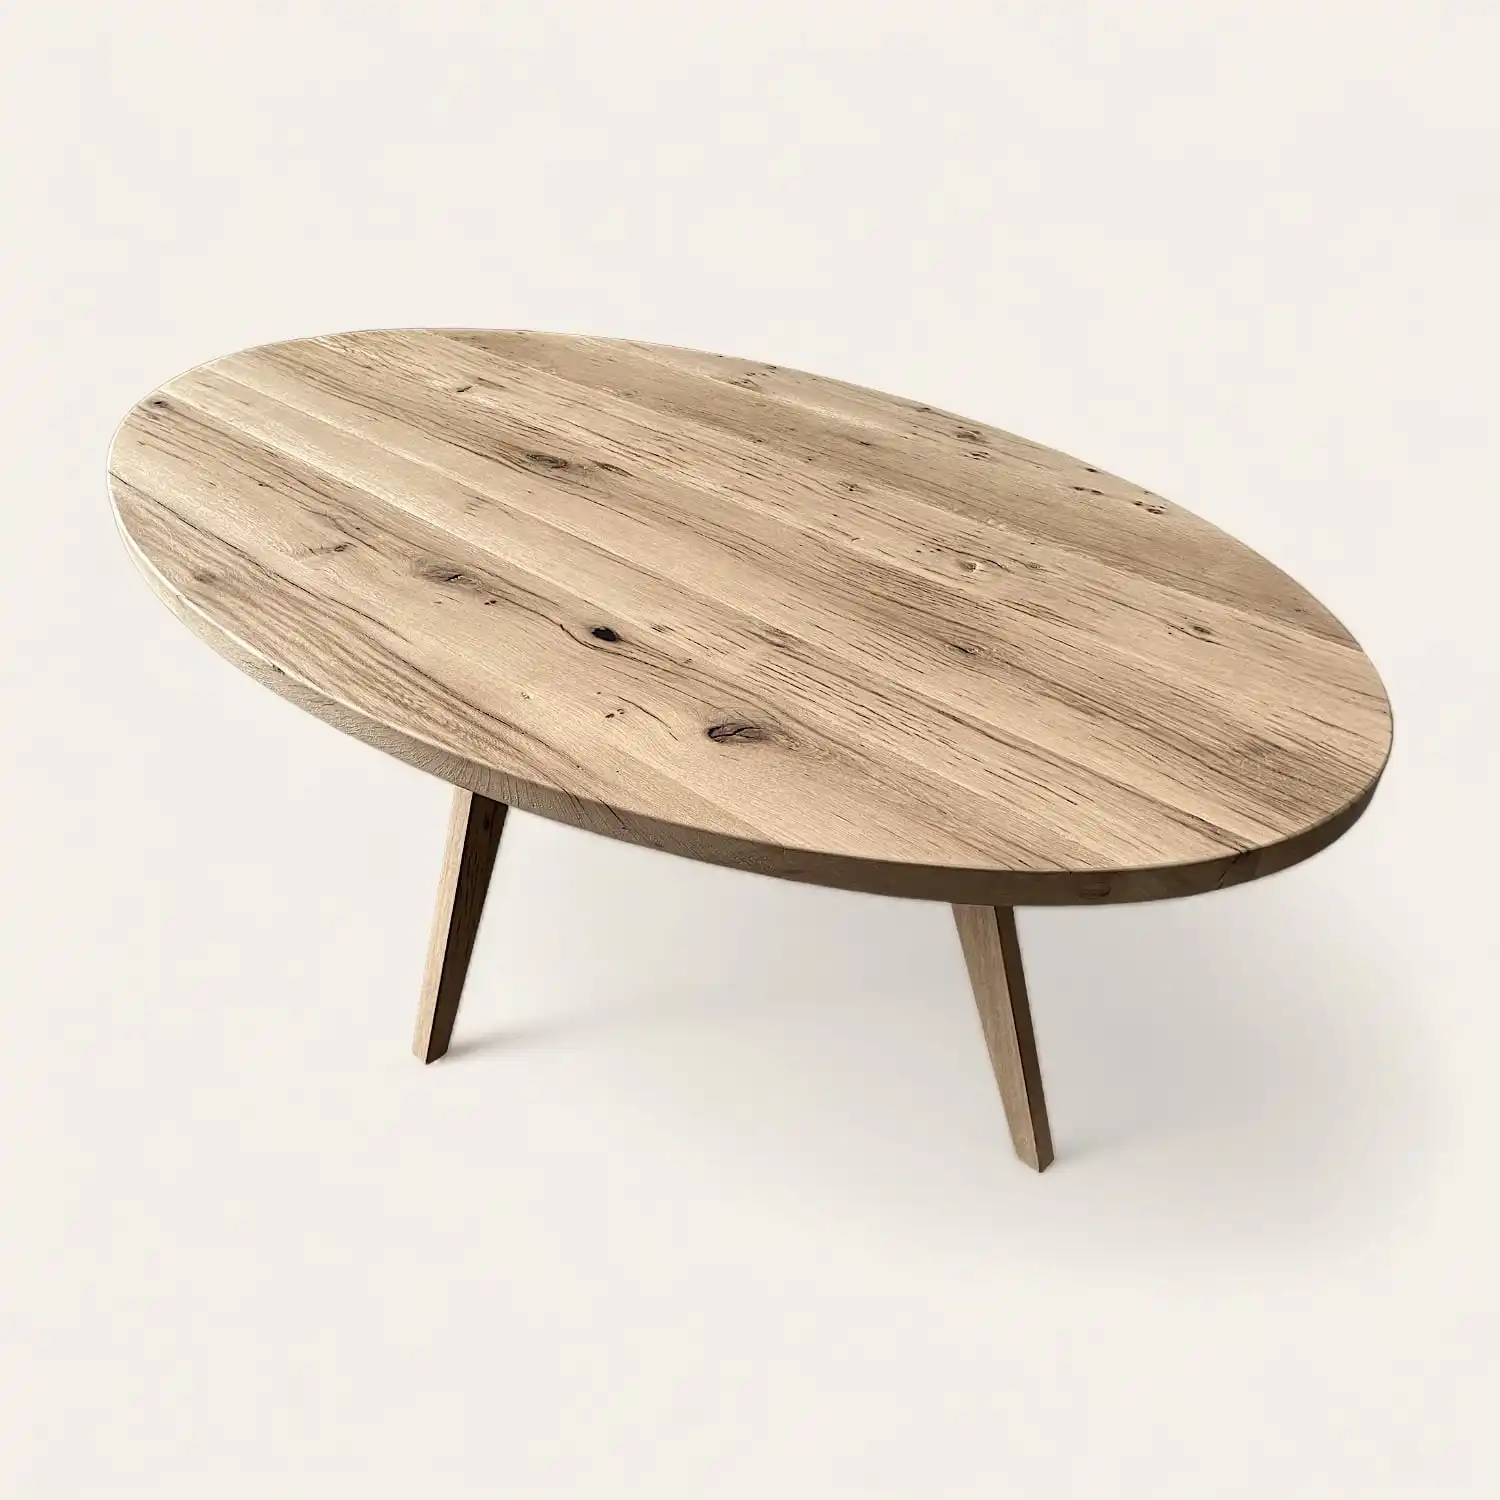  Une table basse rustique ovale en bois sur fond blanc. 